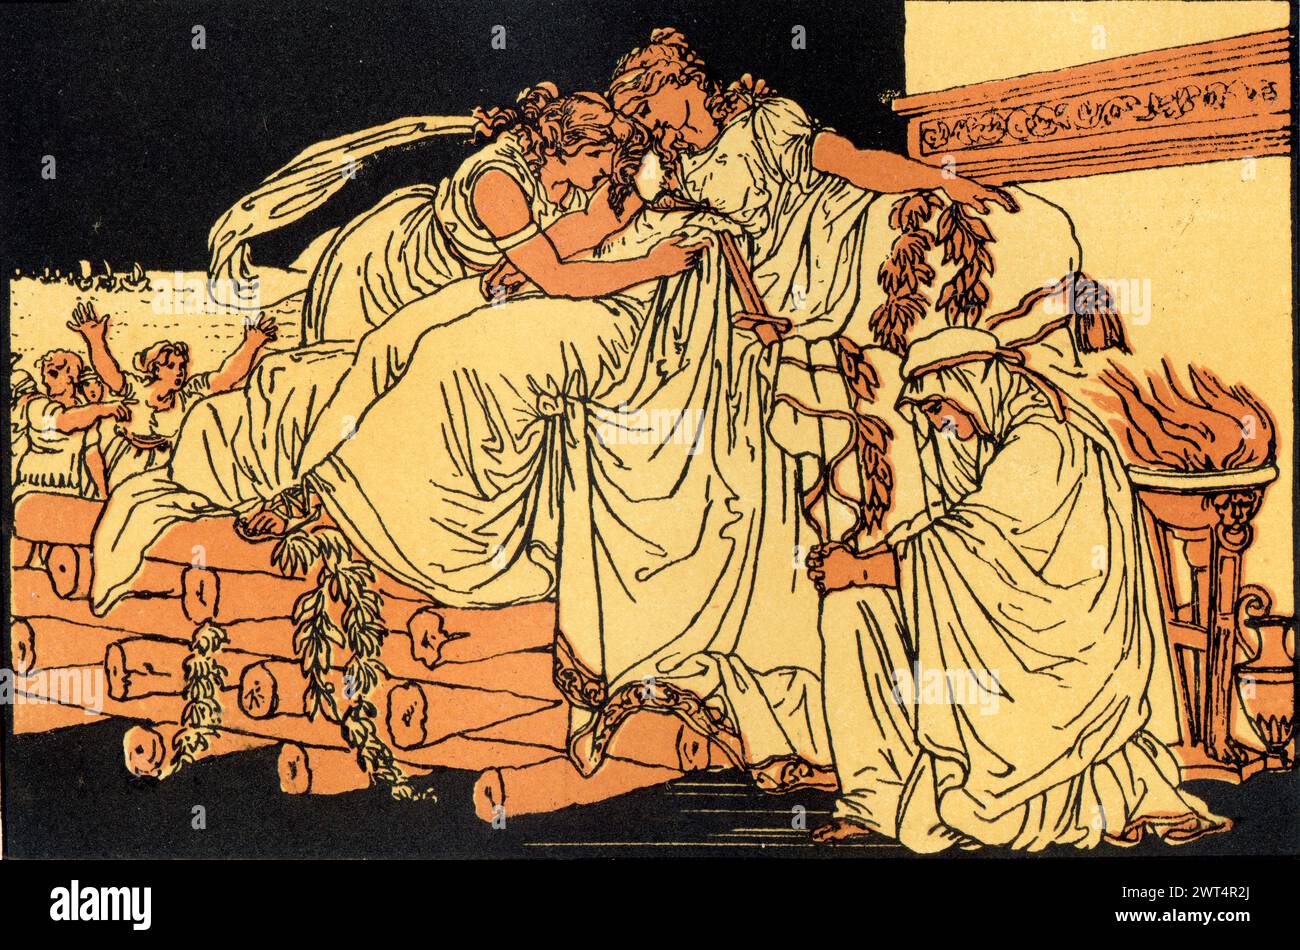 Vintage-Illustration römische Mythologie, Dido auf dem Trauerhaufen, Aeneid ein lateinisches Epos, das die legendäre Geschichte von Aeneas erzählt, einem Trojaner, der aus dem Land geflohen ist Stockfoto